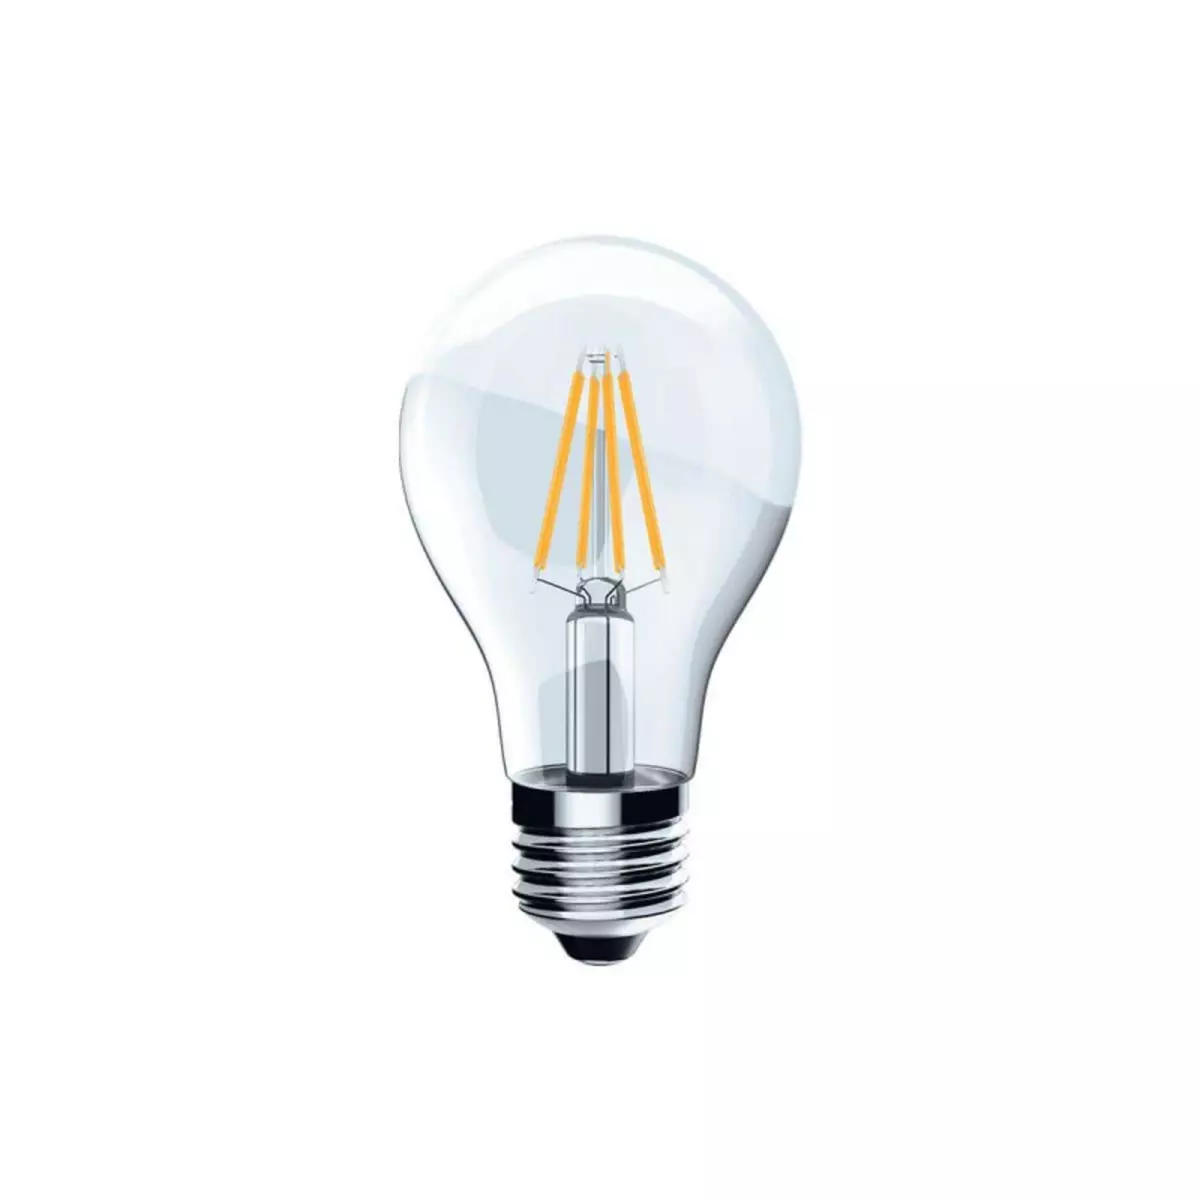  Ampoule LED Filament XXCELL Standard clair - E27 équivalent 60W